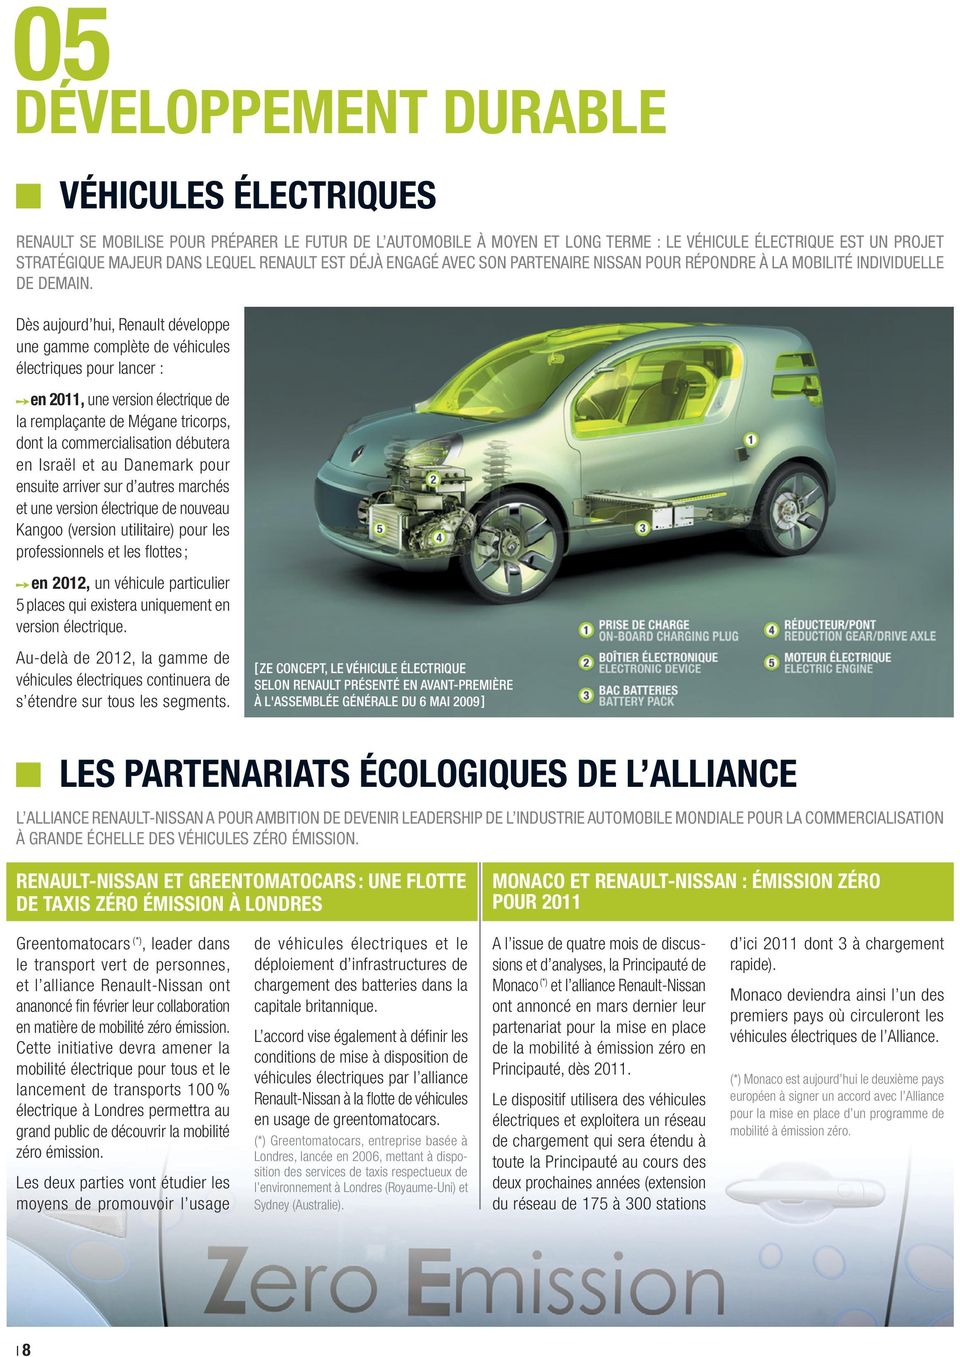 Dès aujourd hui, Renault développe une gamme complète de véhicules électriques pour lancer : en 2011, une version électrique de la remplaçante de Mégane tricorps, dont la commercialisation débutera